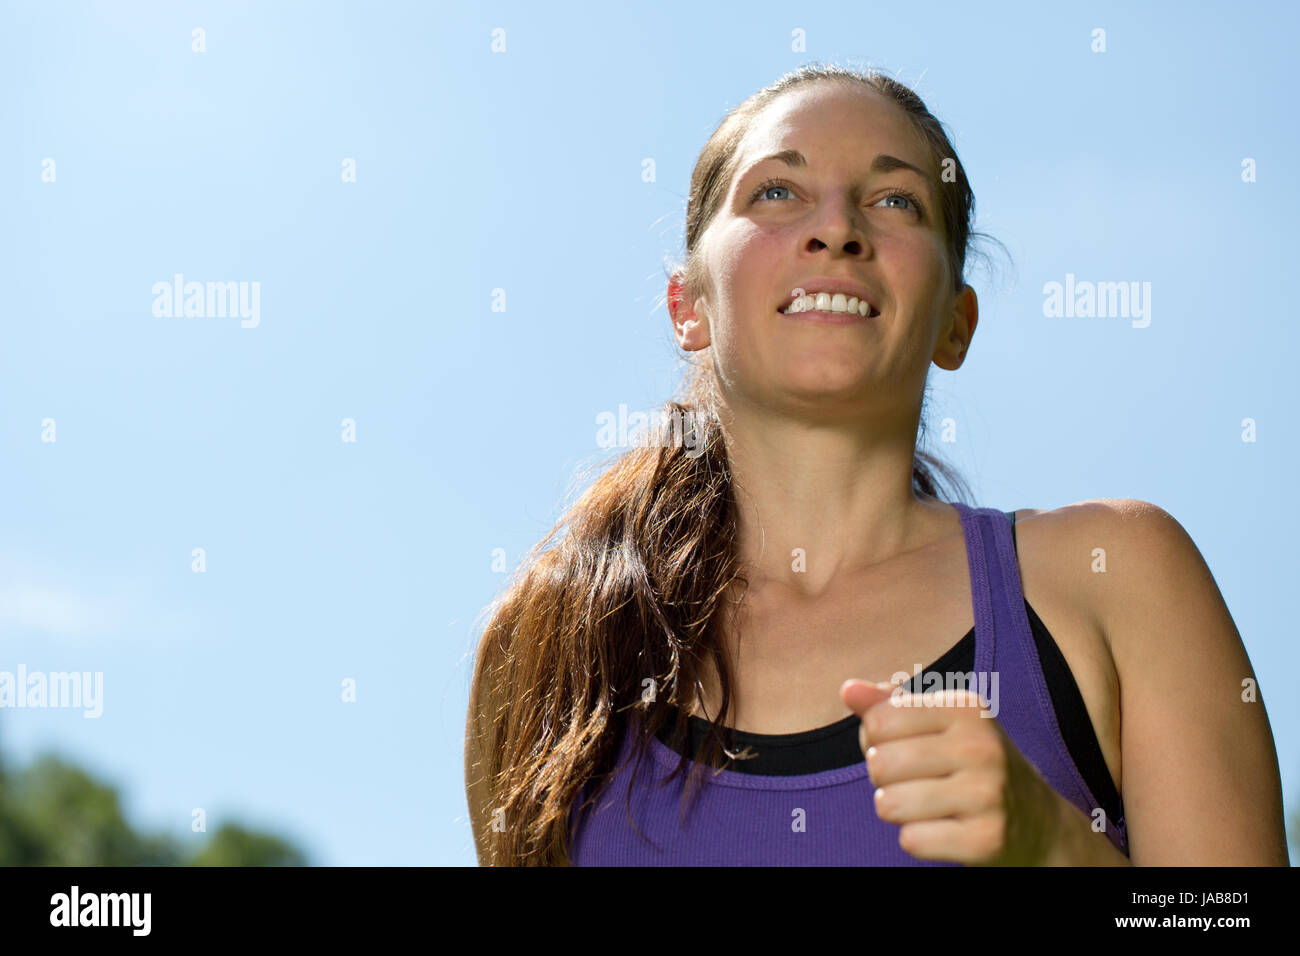 Sport Joggen junge Frau beim Laufen Training draußen in der Natur Stock Photo